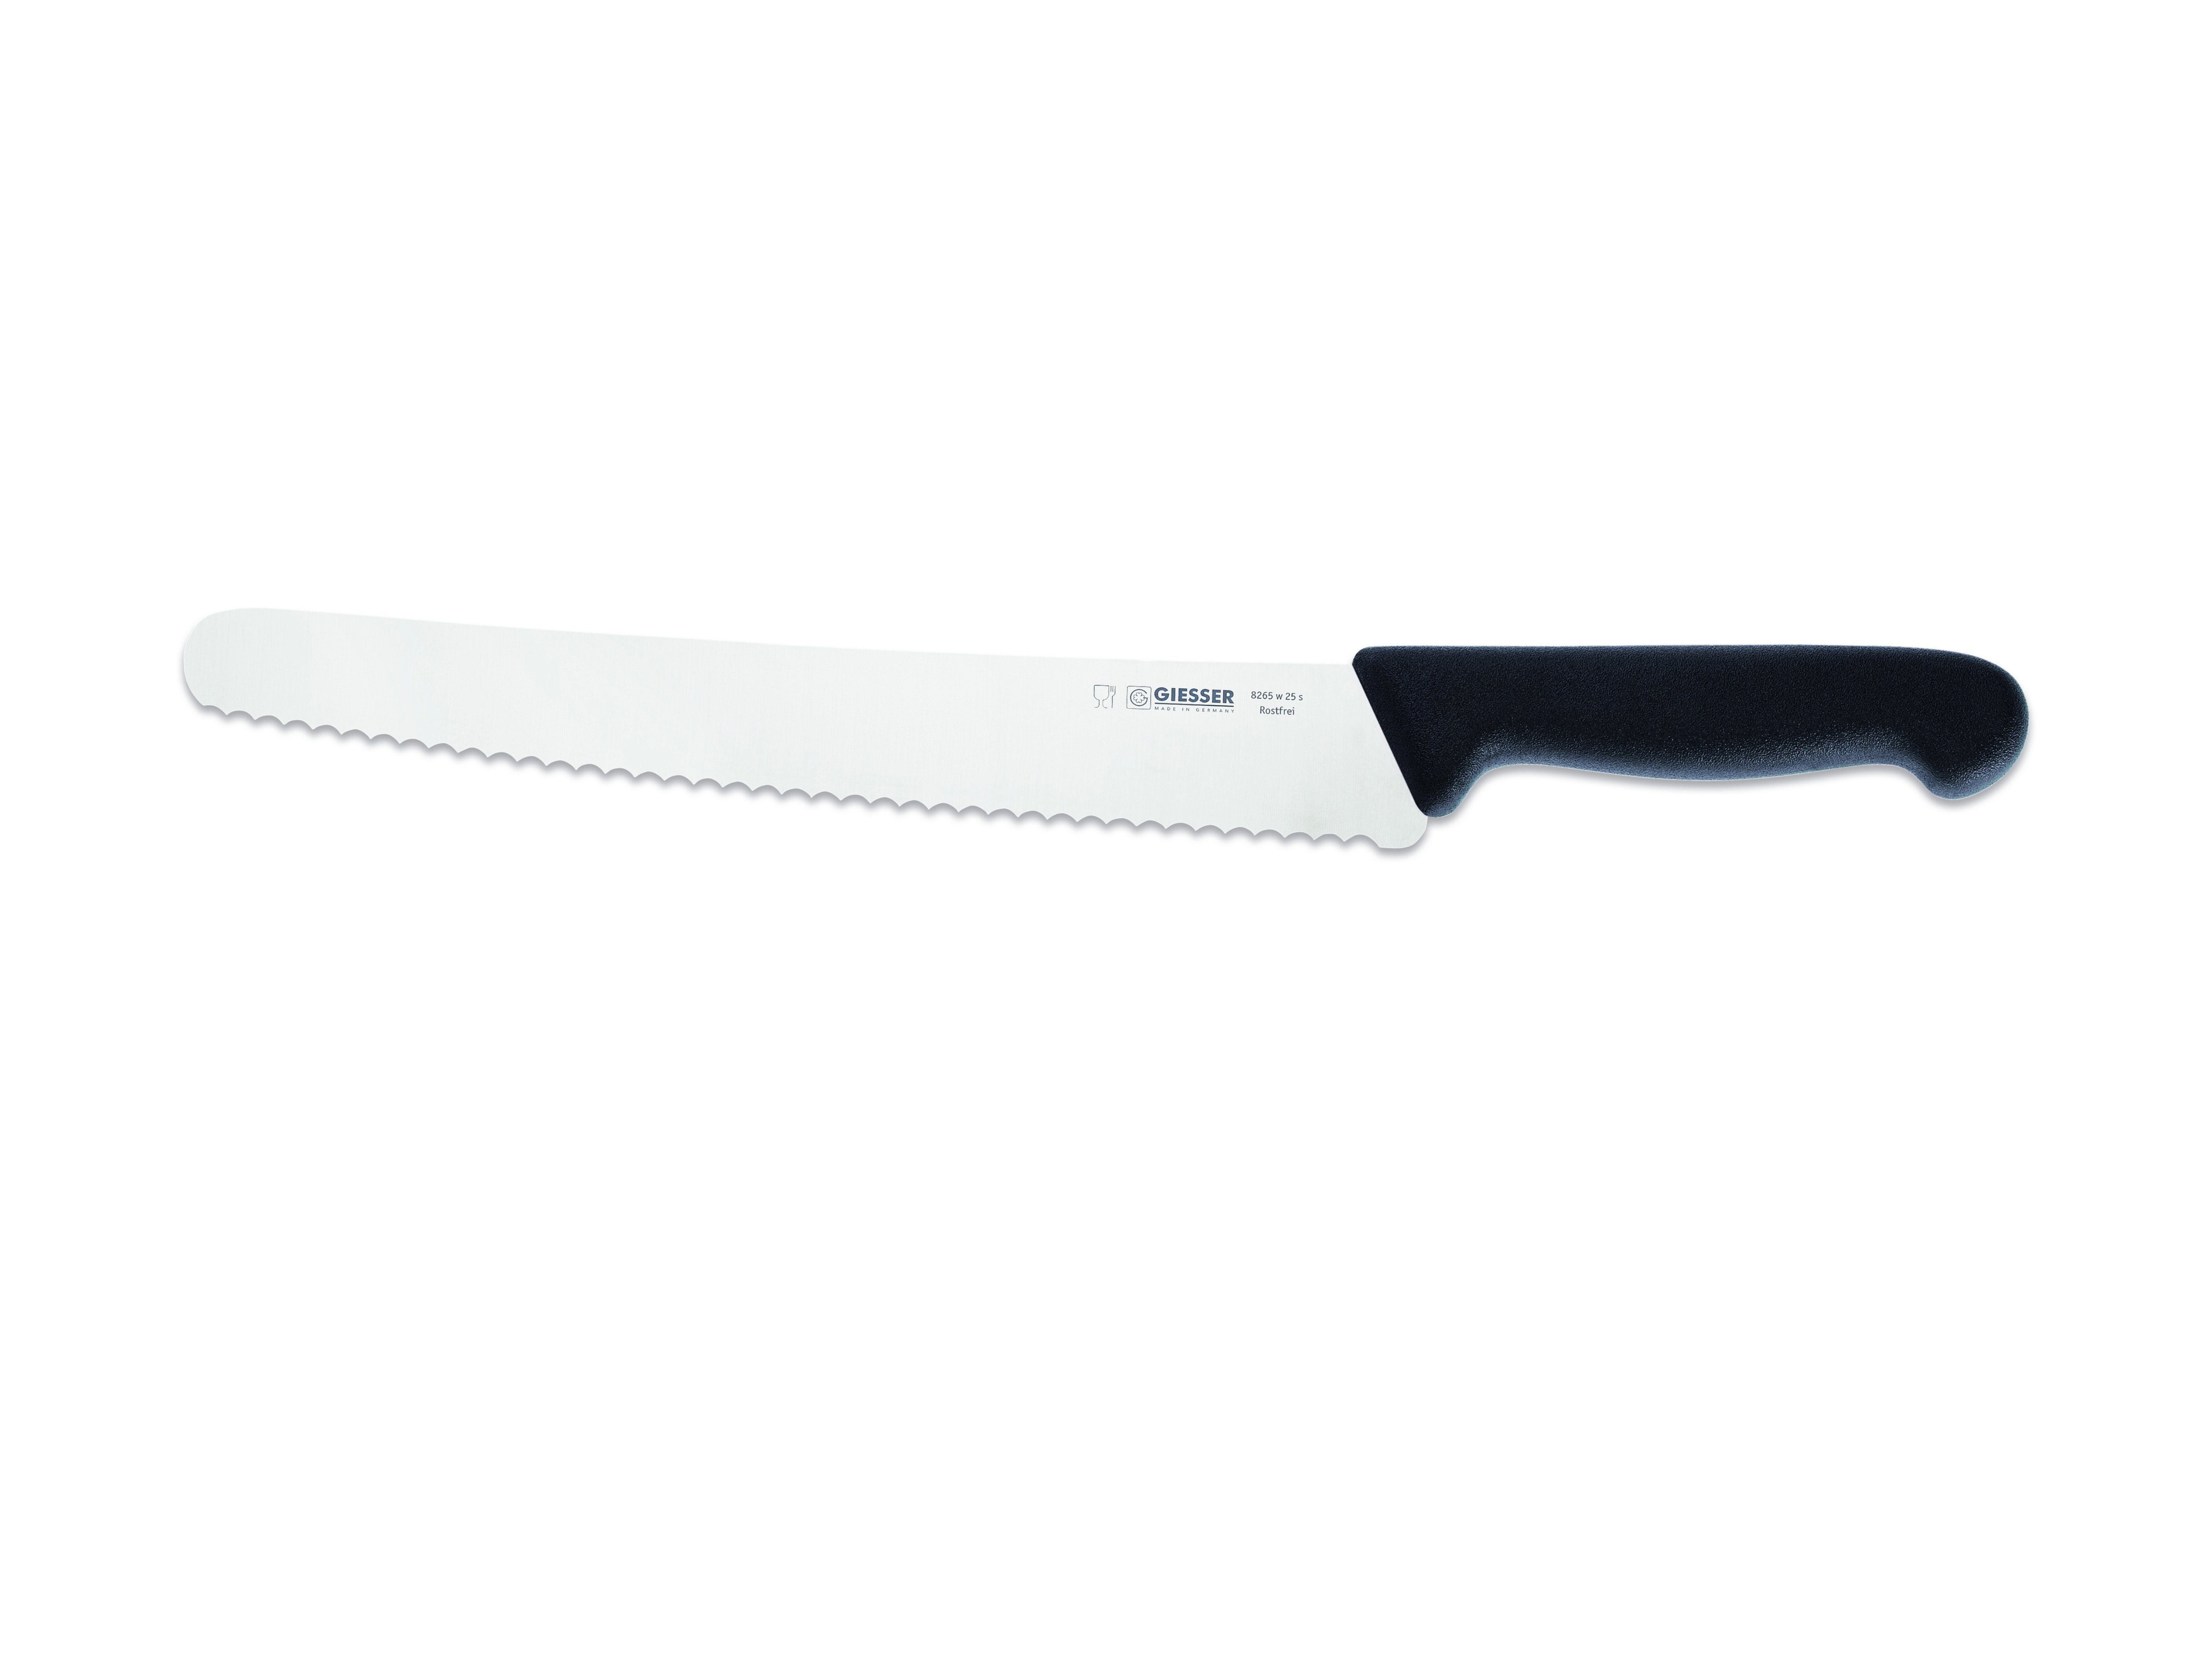 Giesser Messer Brotmesser Universalmesser 8265 w 25, kunststoffgespritzt schwarz - Welle links